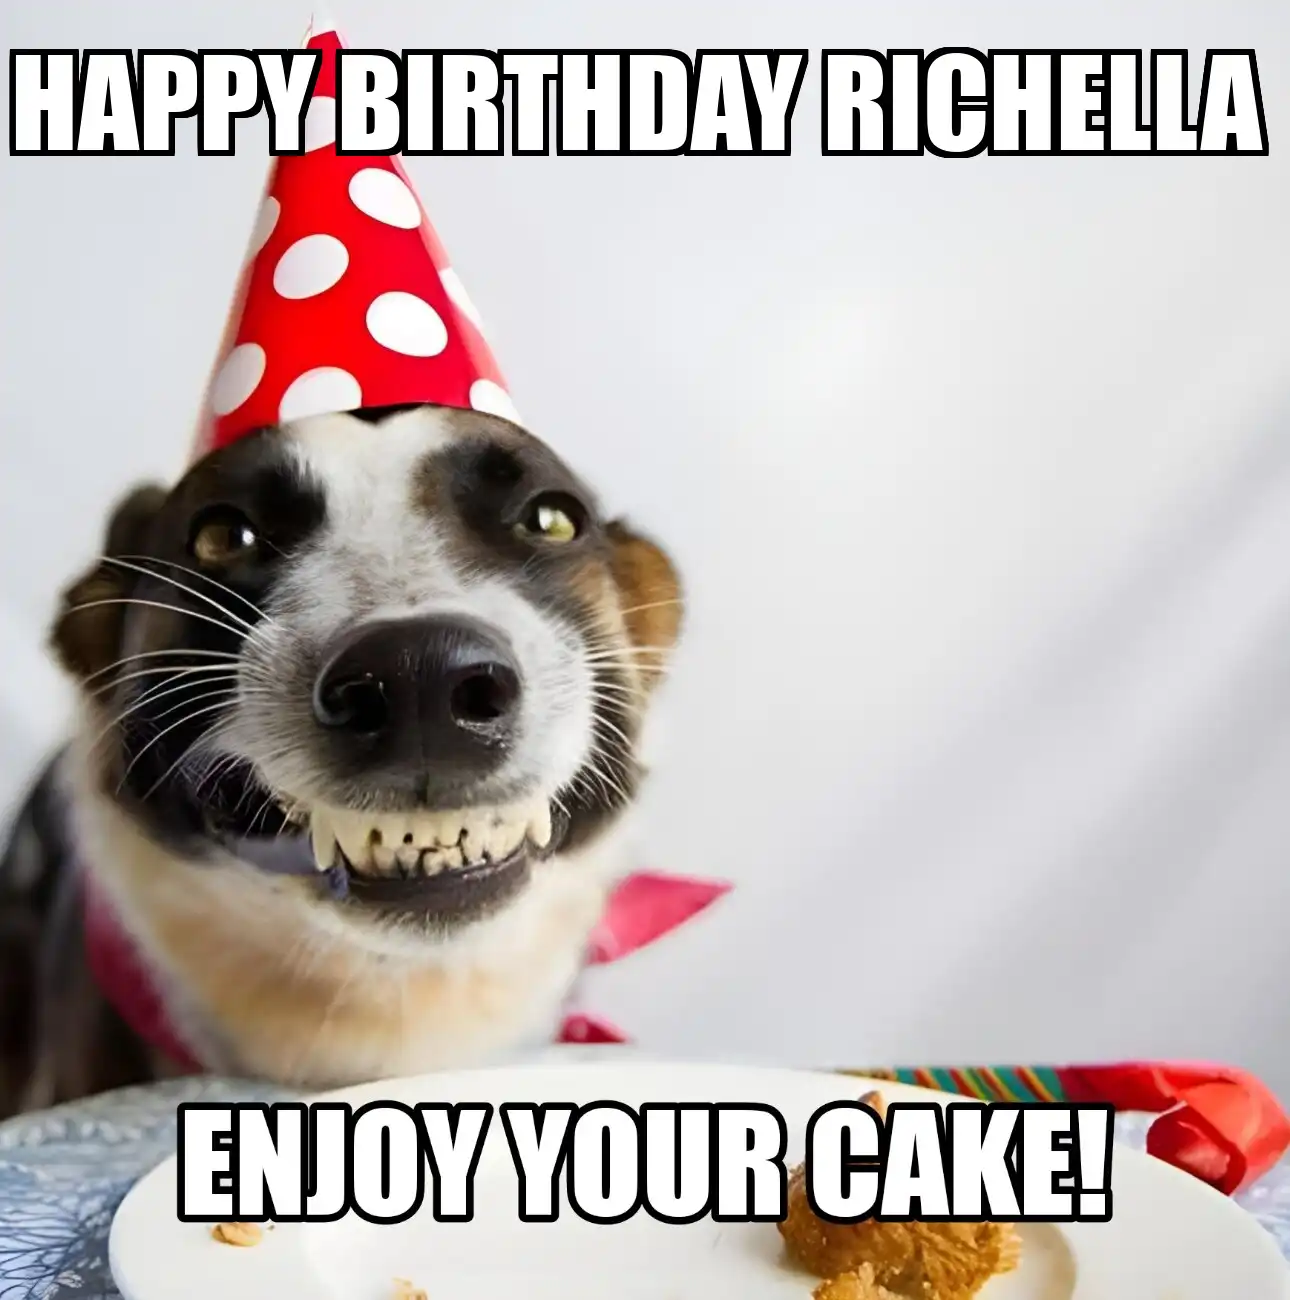 Happy Birthday Richella Enjoy Your Cake Dog Meme